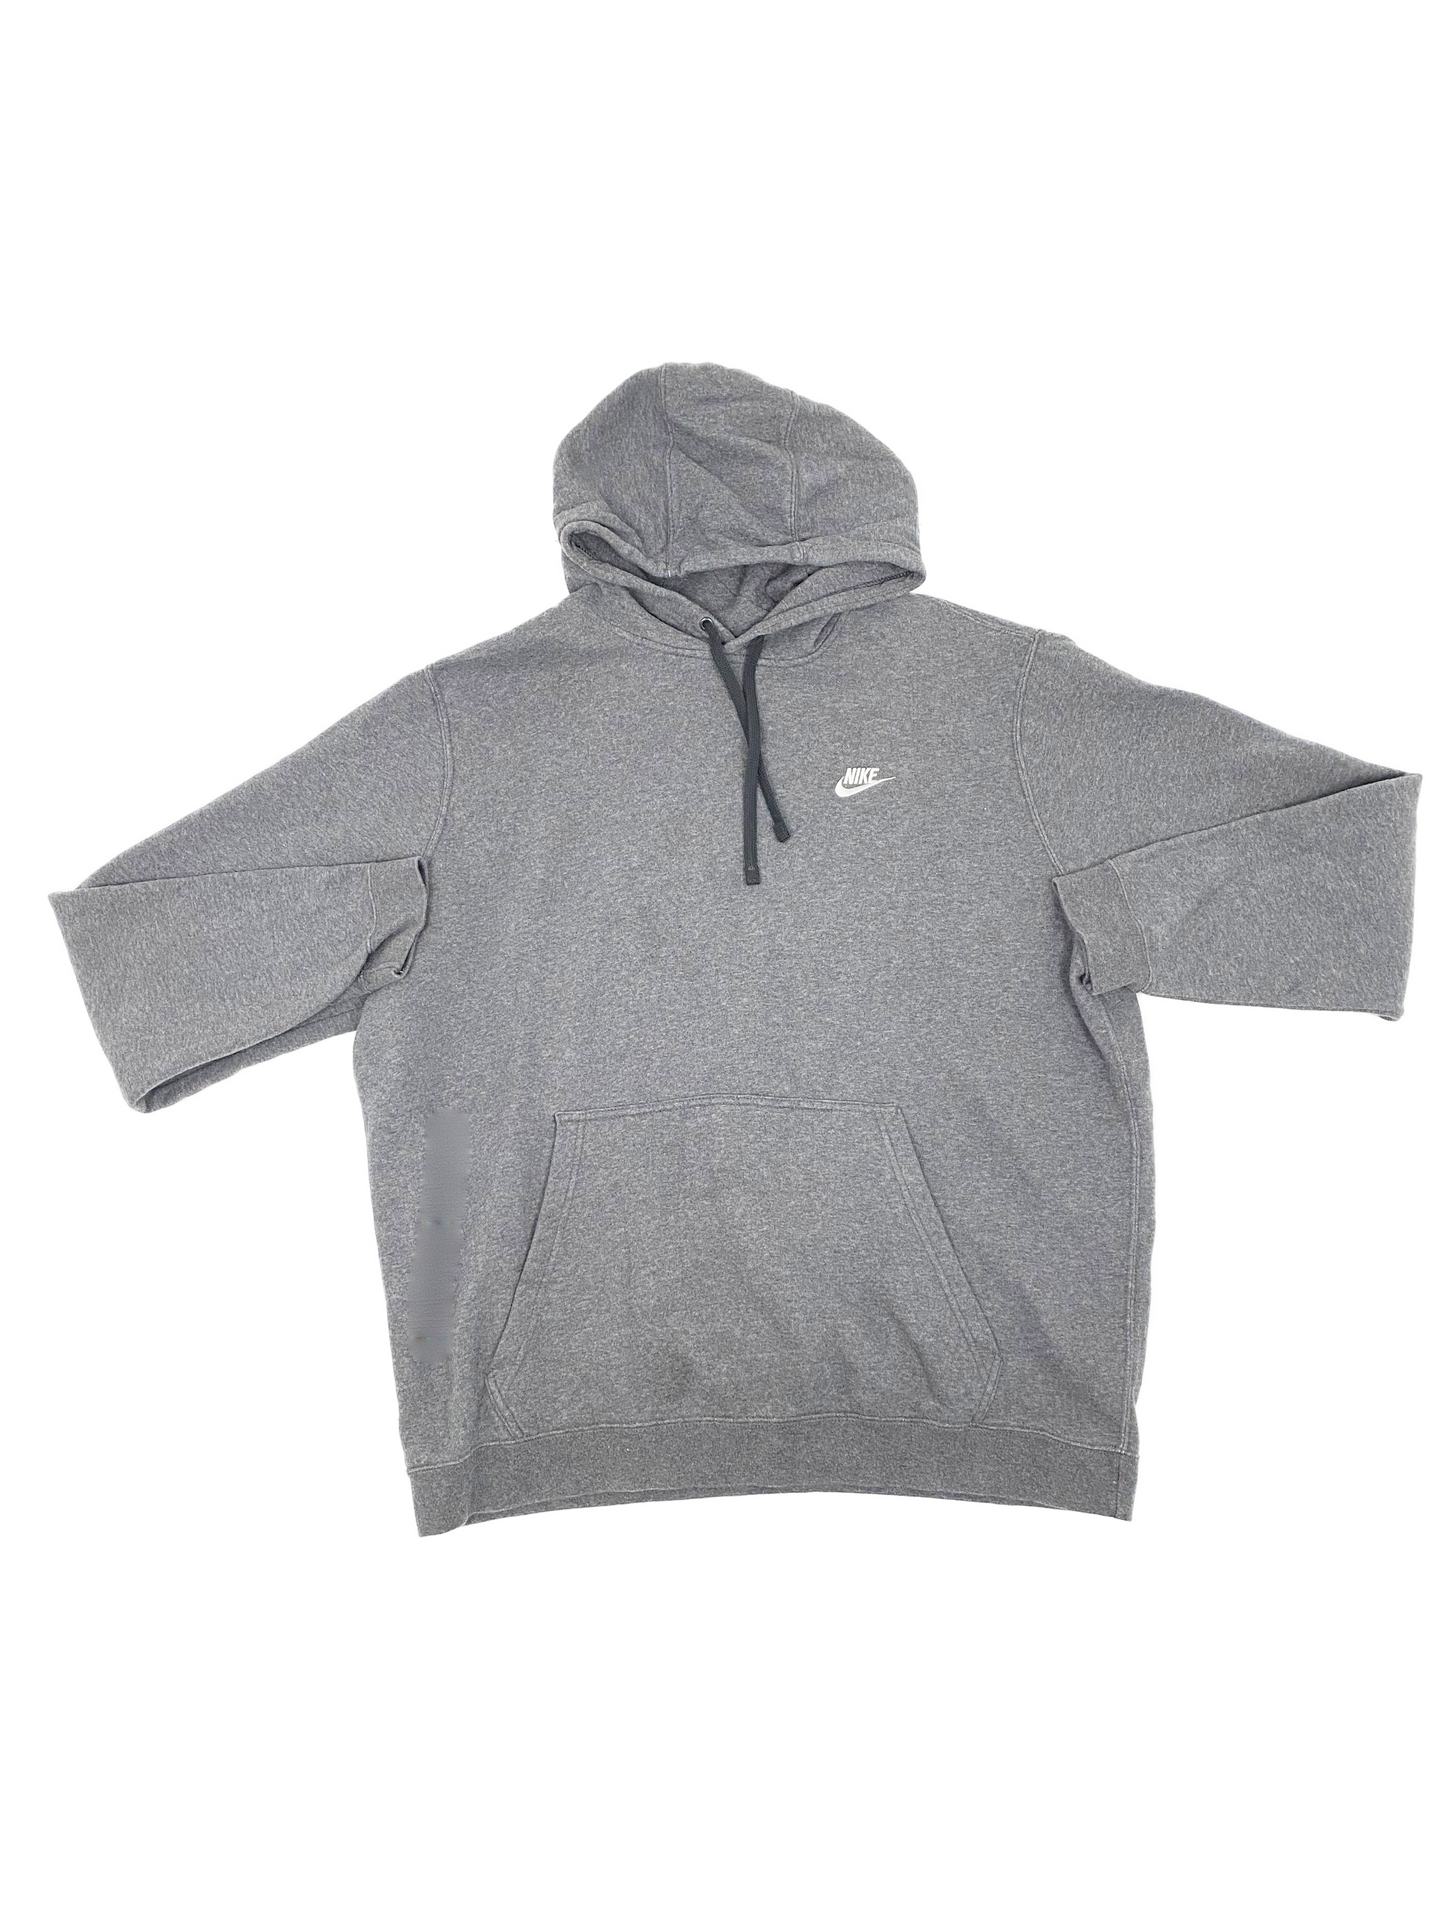 Nike Grey Hoodie